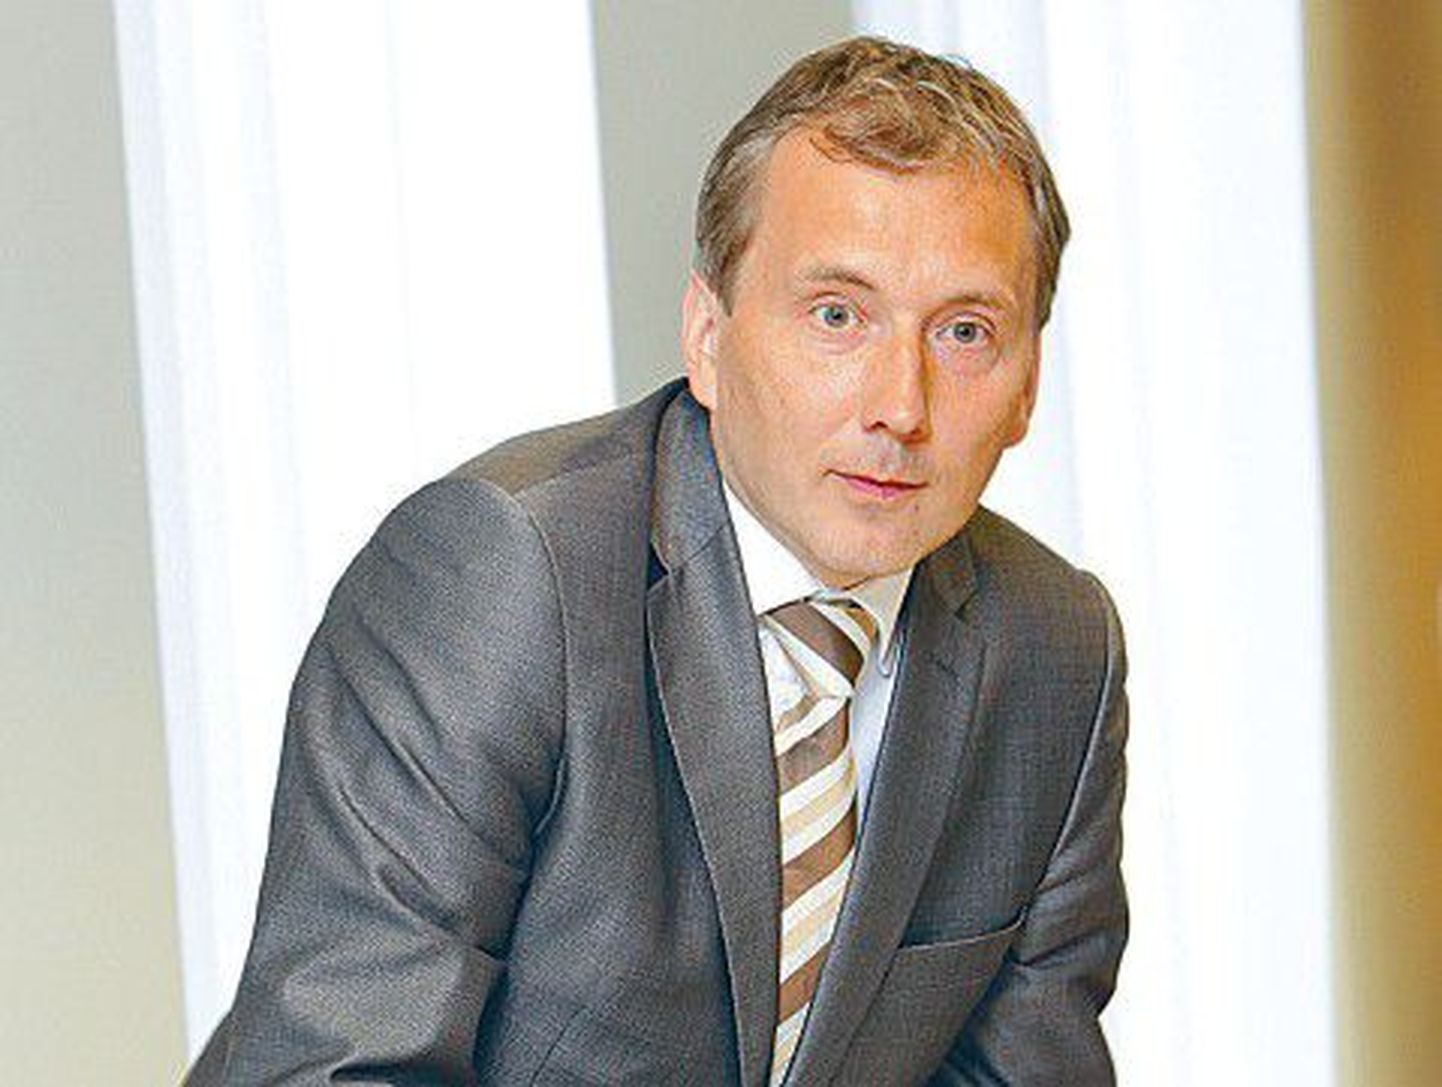 Eesti Suusaliidu president Sandor Liive.